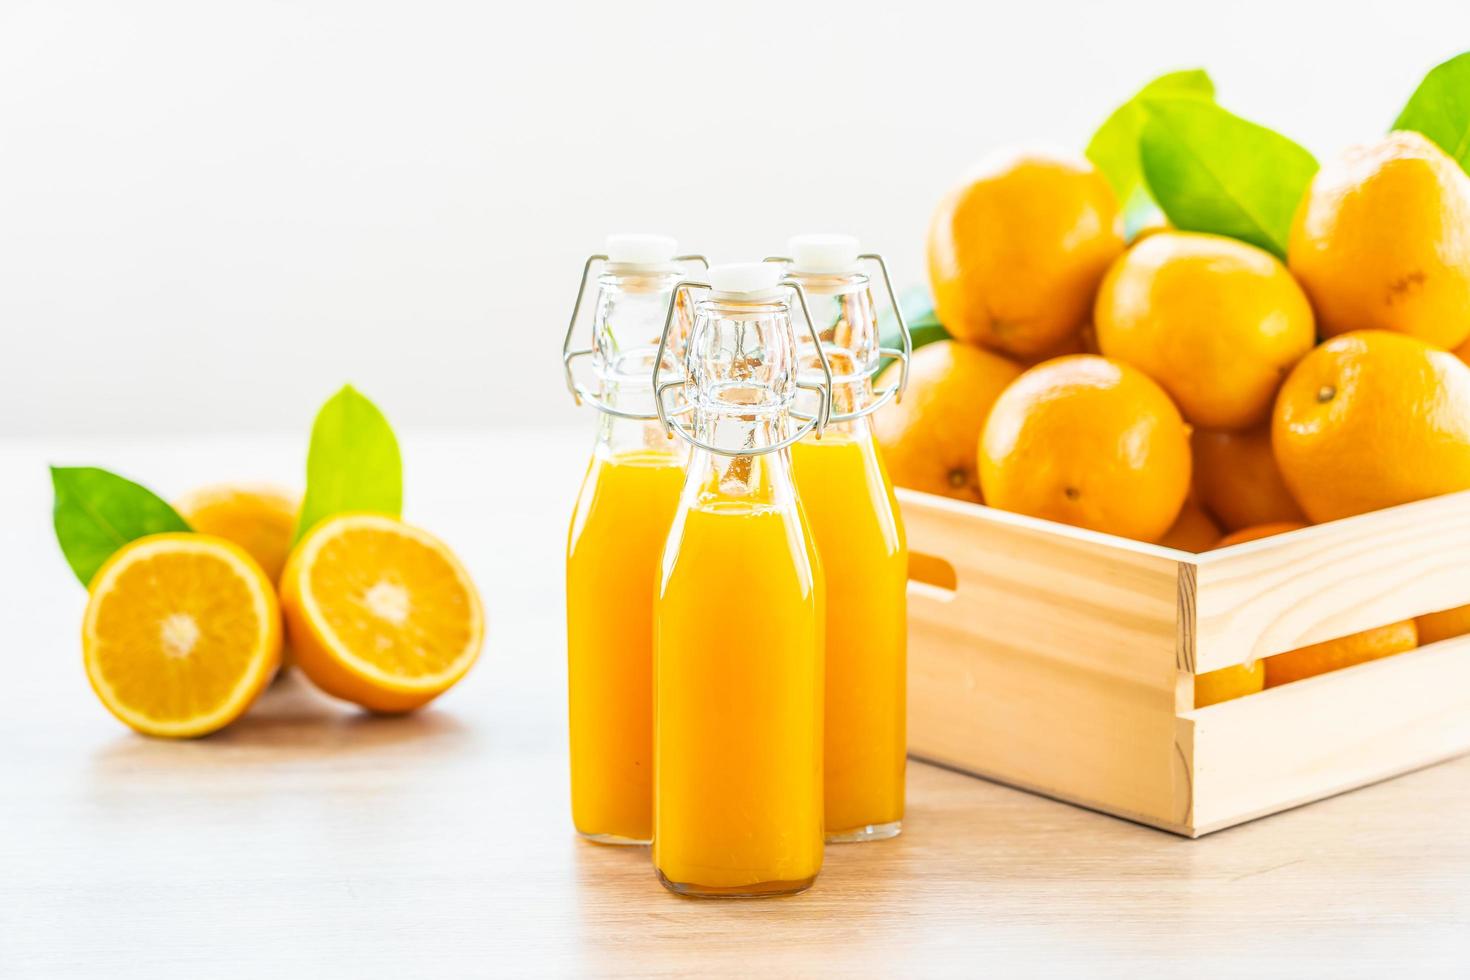 jugo de naranja natural y naranjas foto